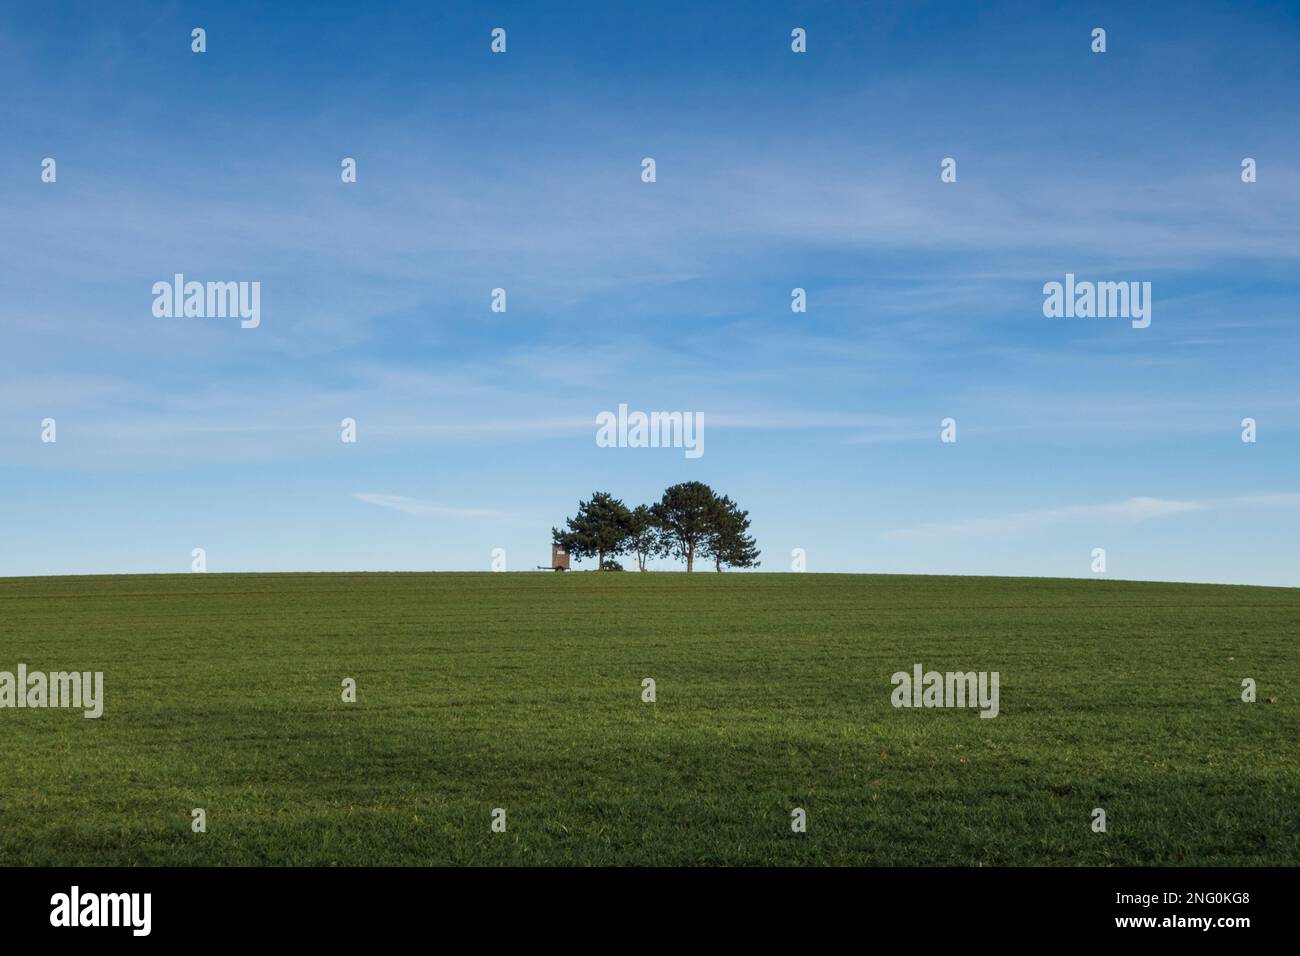 4 Bäume auf einem Hügel mit Feld mit Hochstand eines Jägers, blauer Himmel - 4 trees on hill with field with high stand of hunter, blue sky Stock Photo